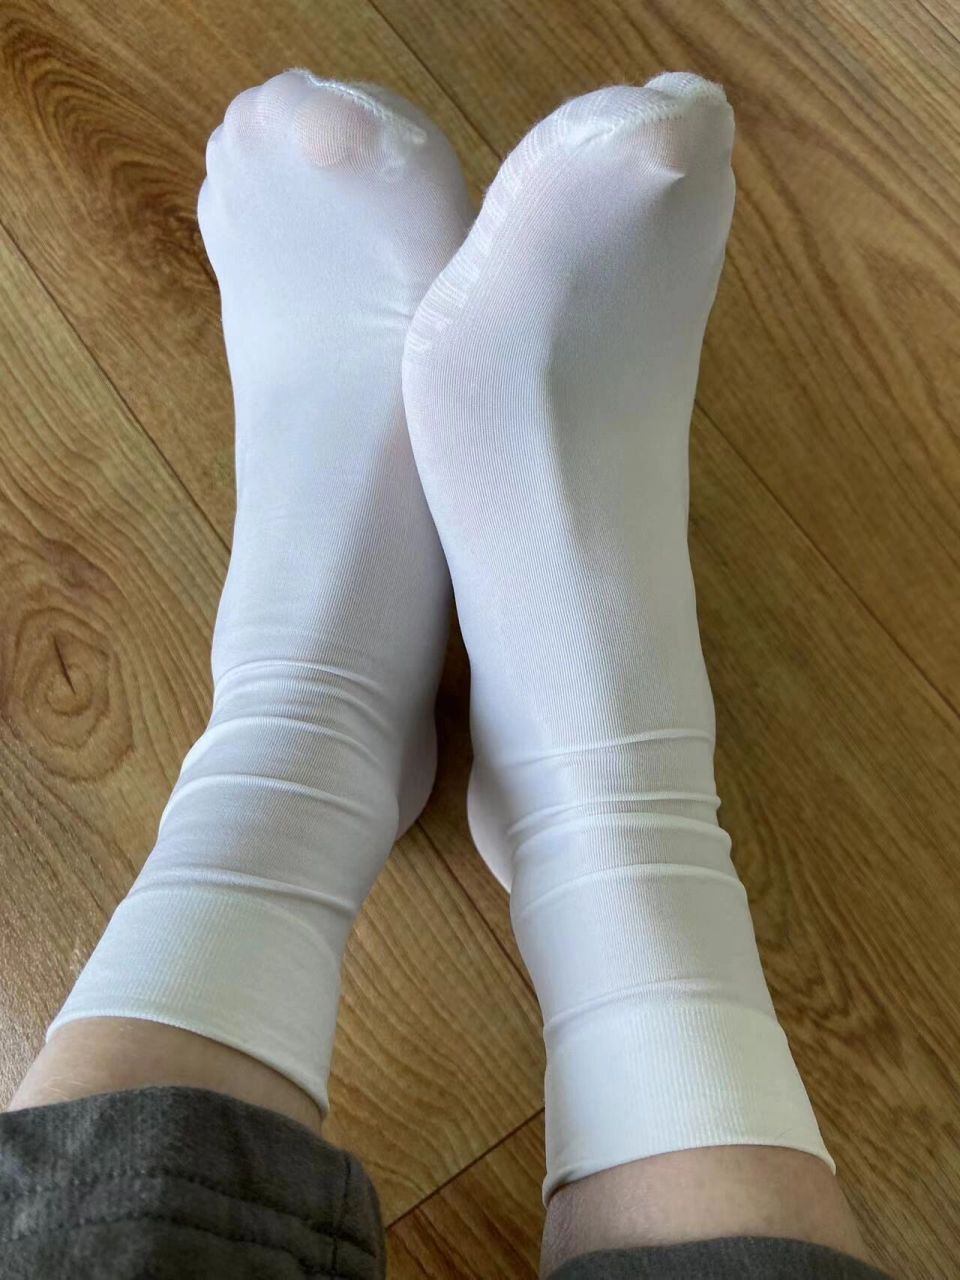 是的 女生穿白袜子最美 袜子显腿细显腿细显腿细!